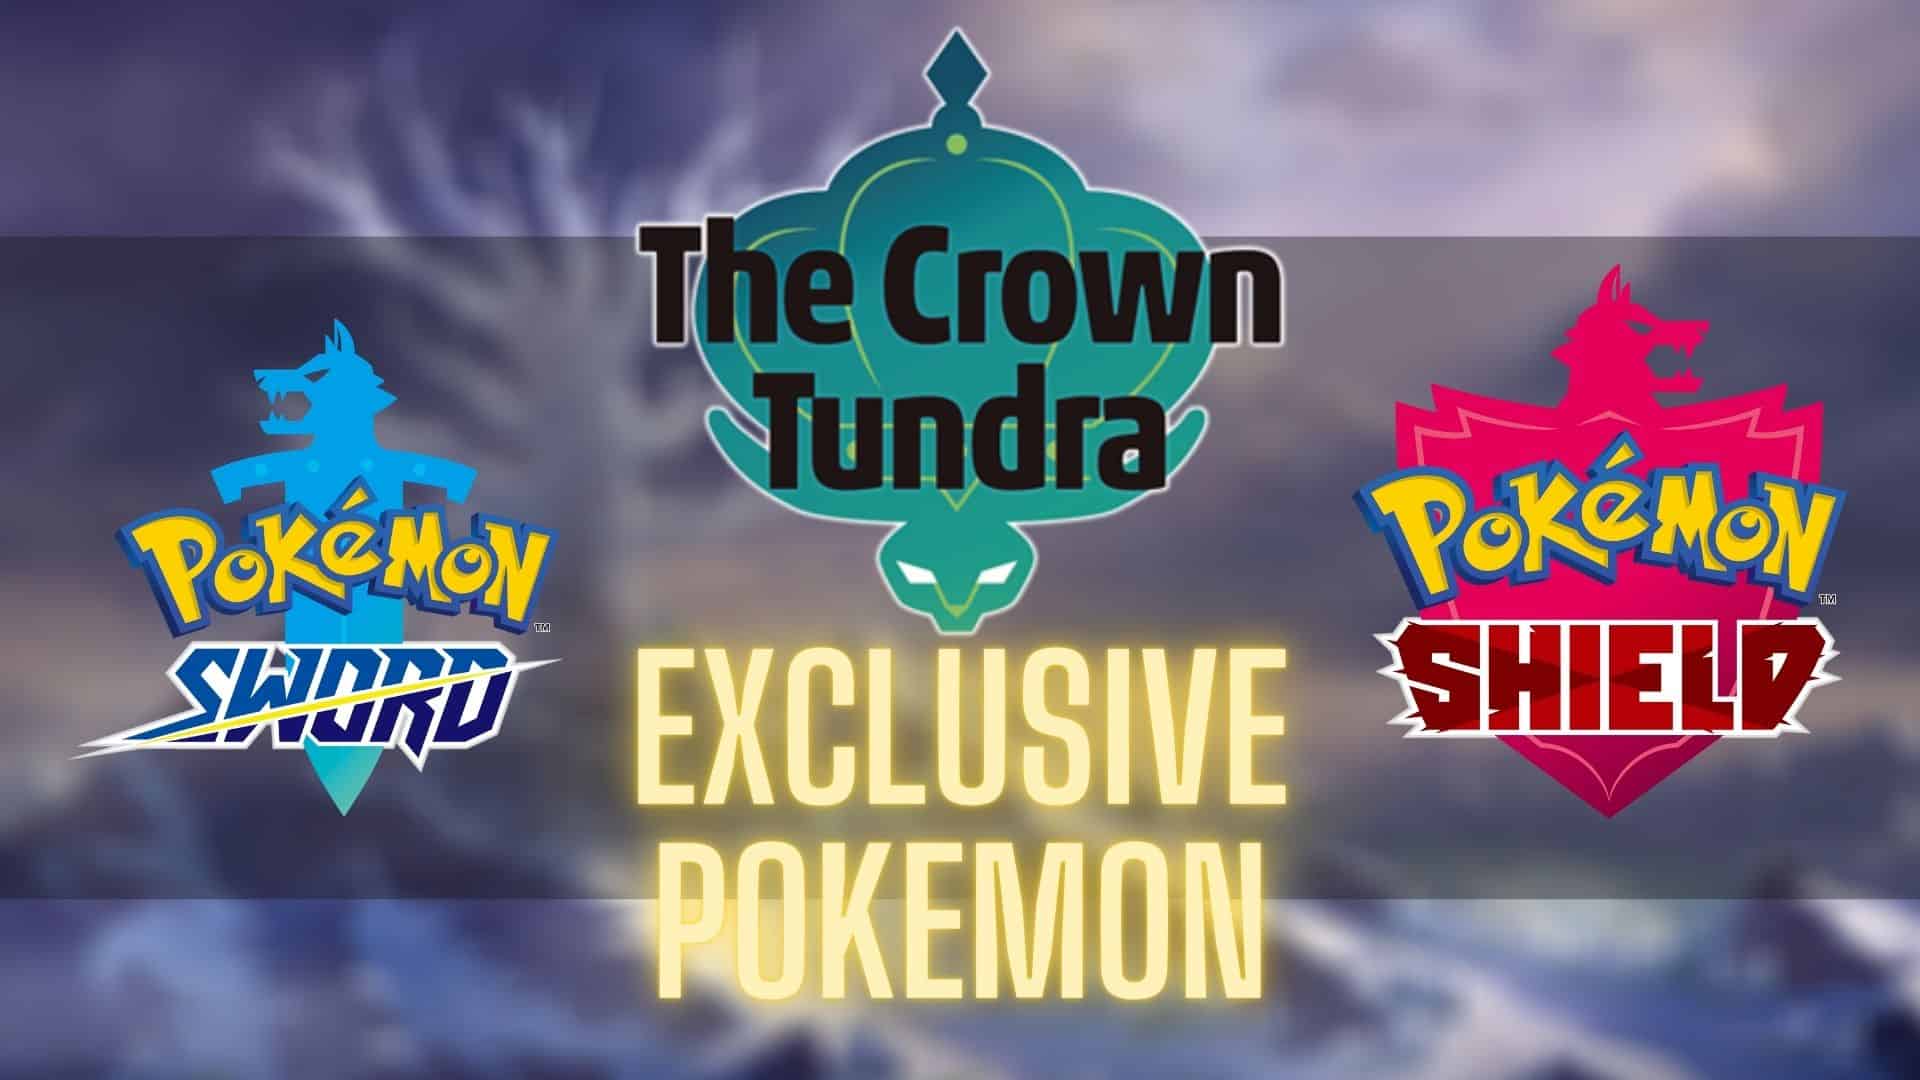 Pokemon Sw & Sh Crown Tundra NEW Pokemon List w/ Stats